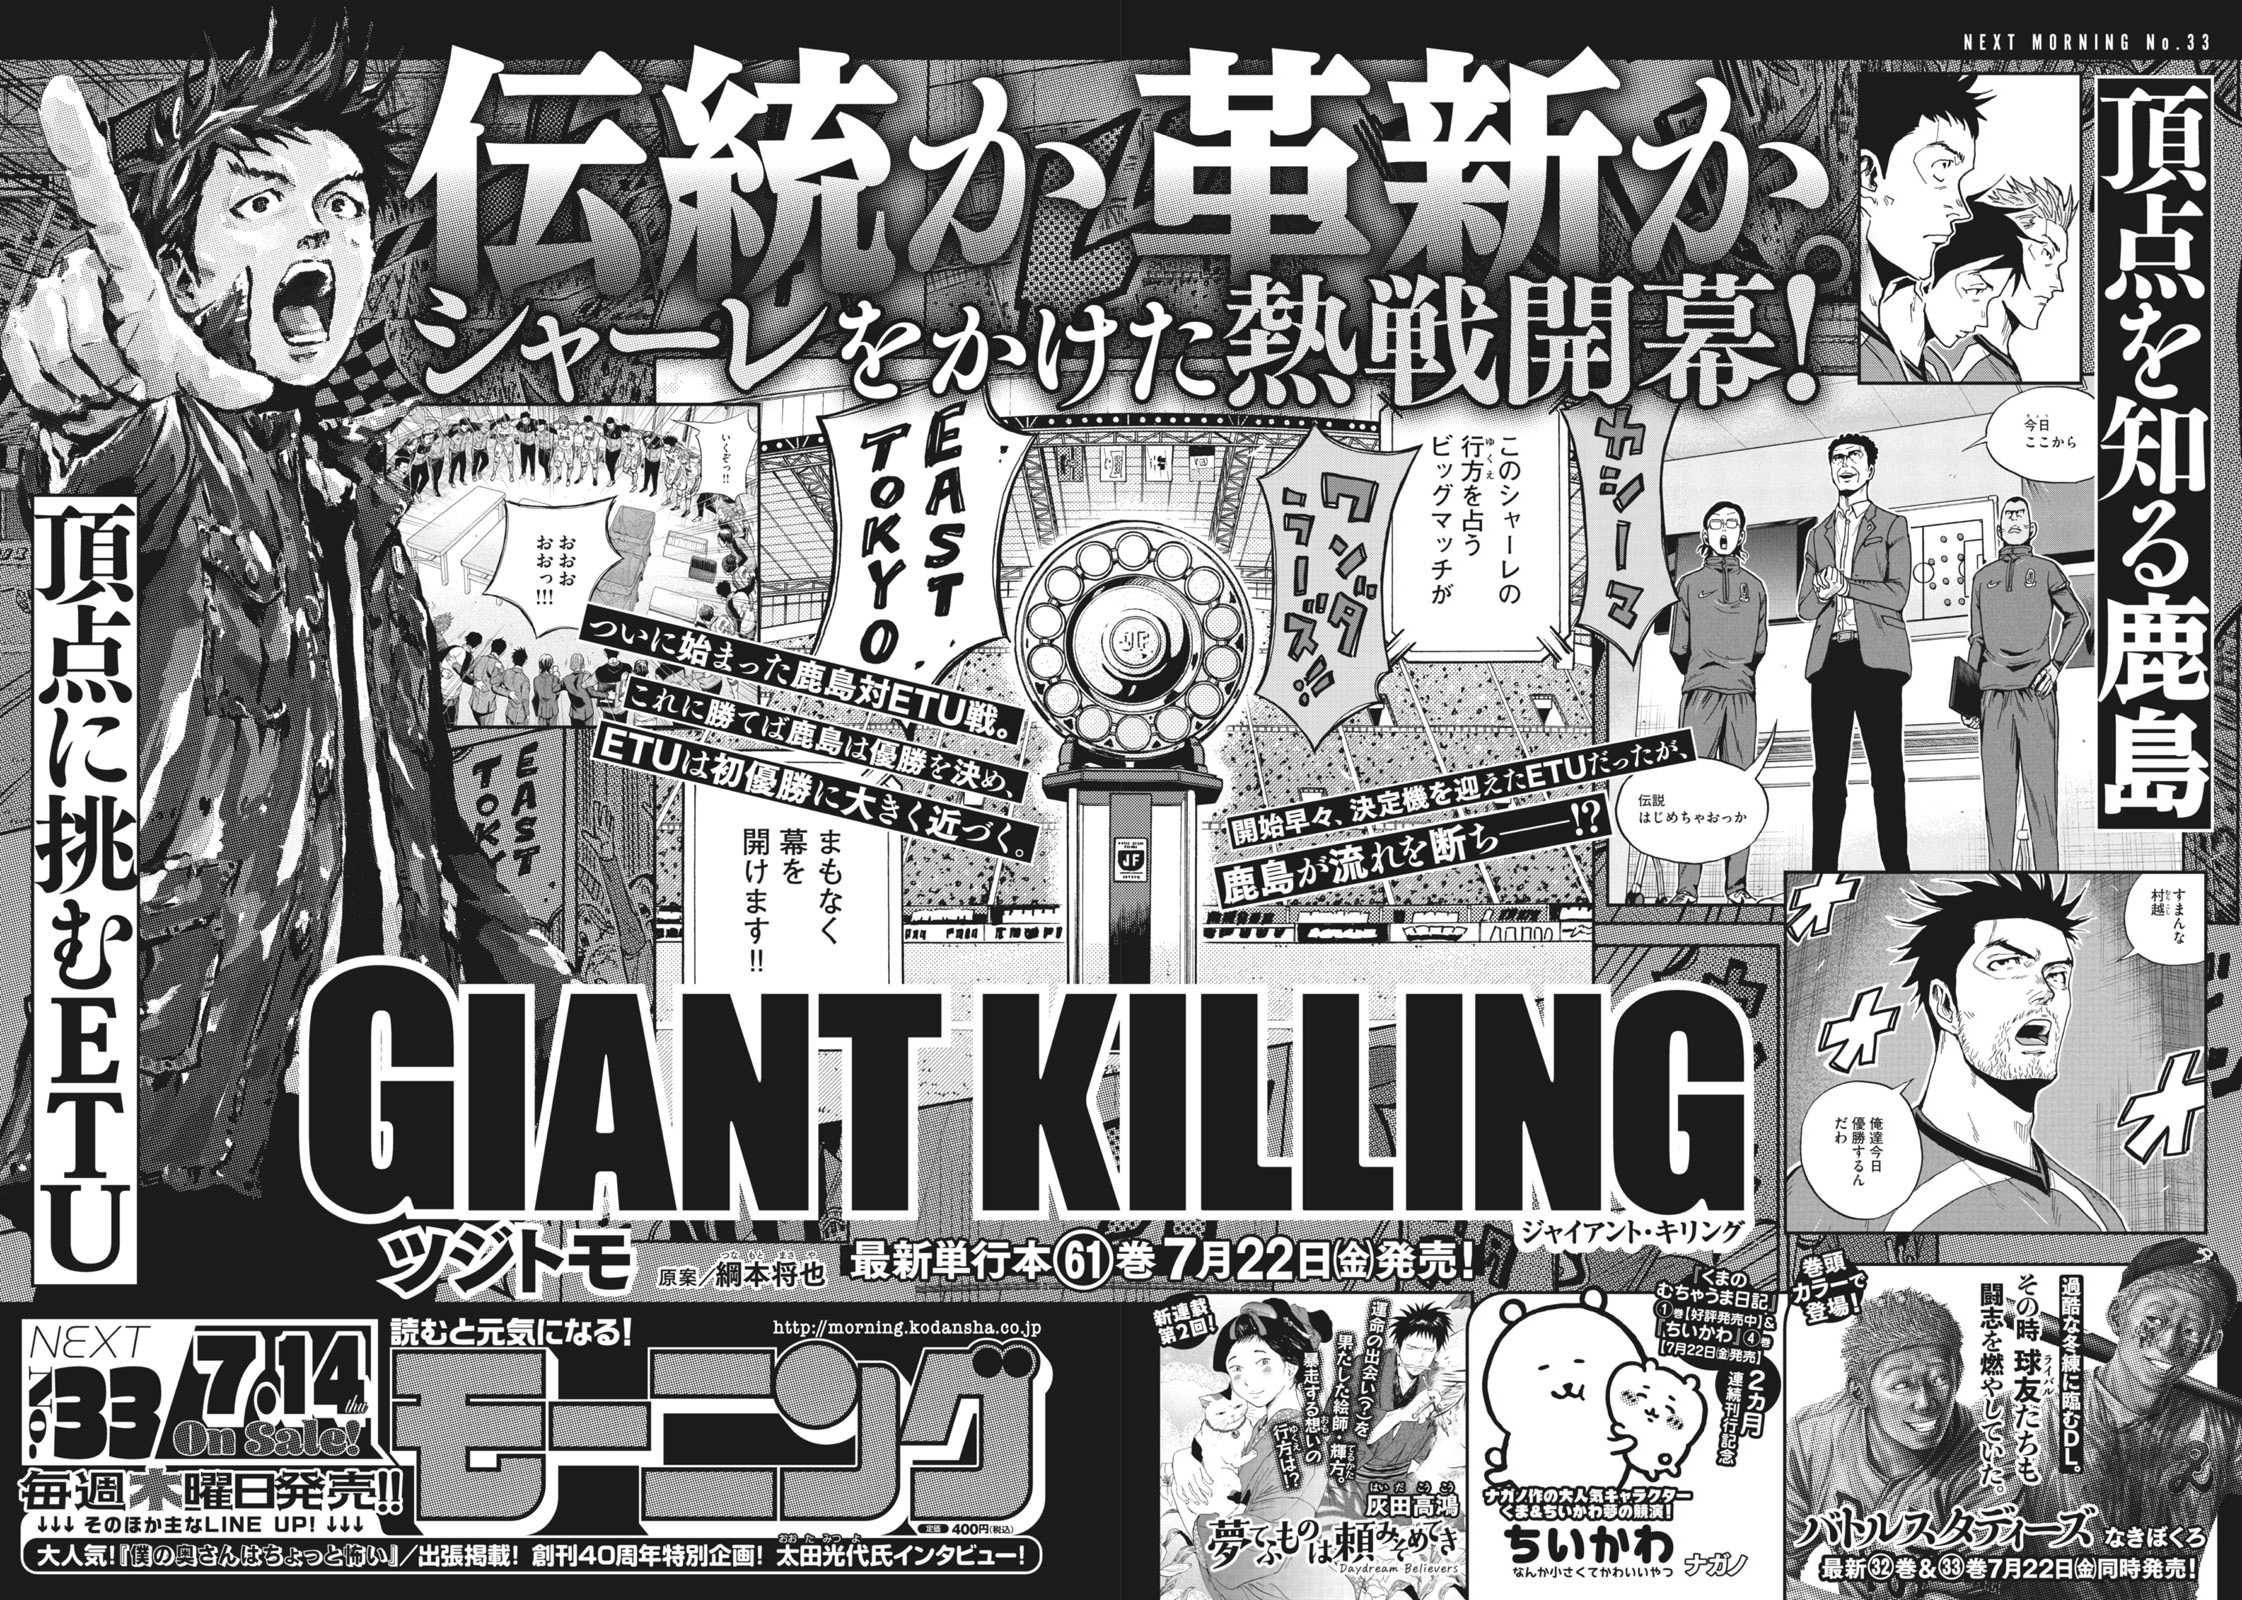 Giant Killing 公式 単行本61巻 発売中 Giant Killing Twitter